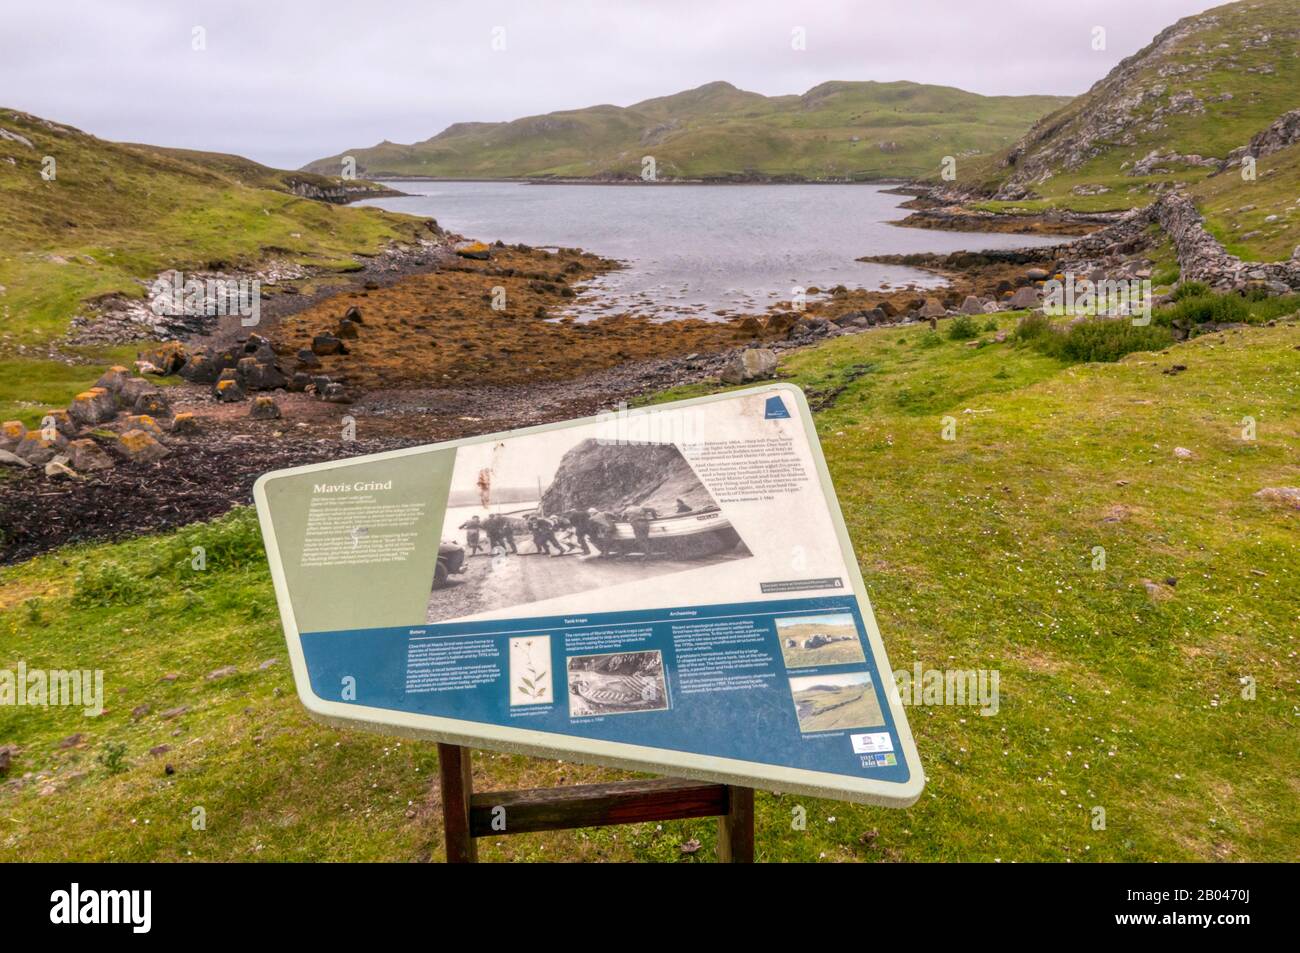 Un segno interpretativo a Mavis Grind in Shetland. Foto Stock